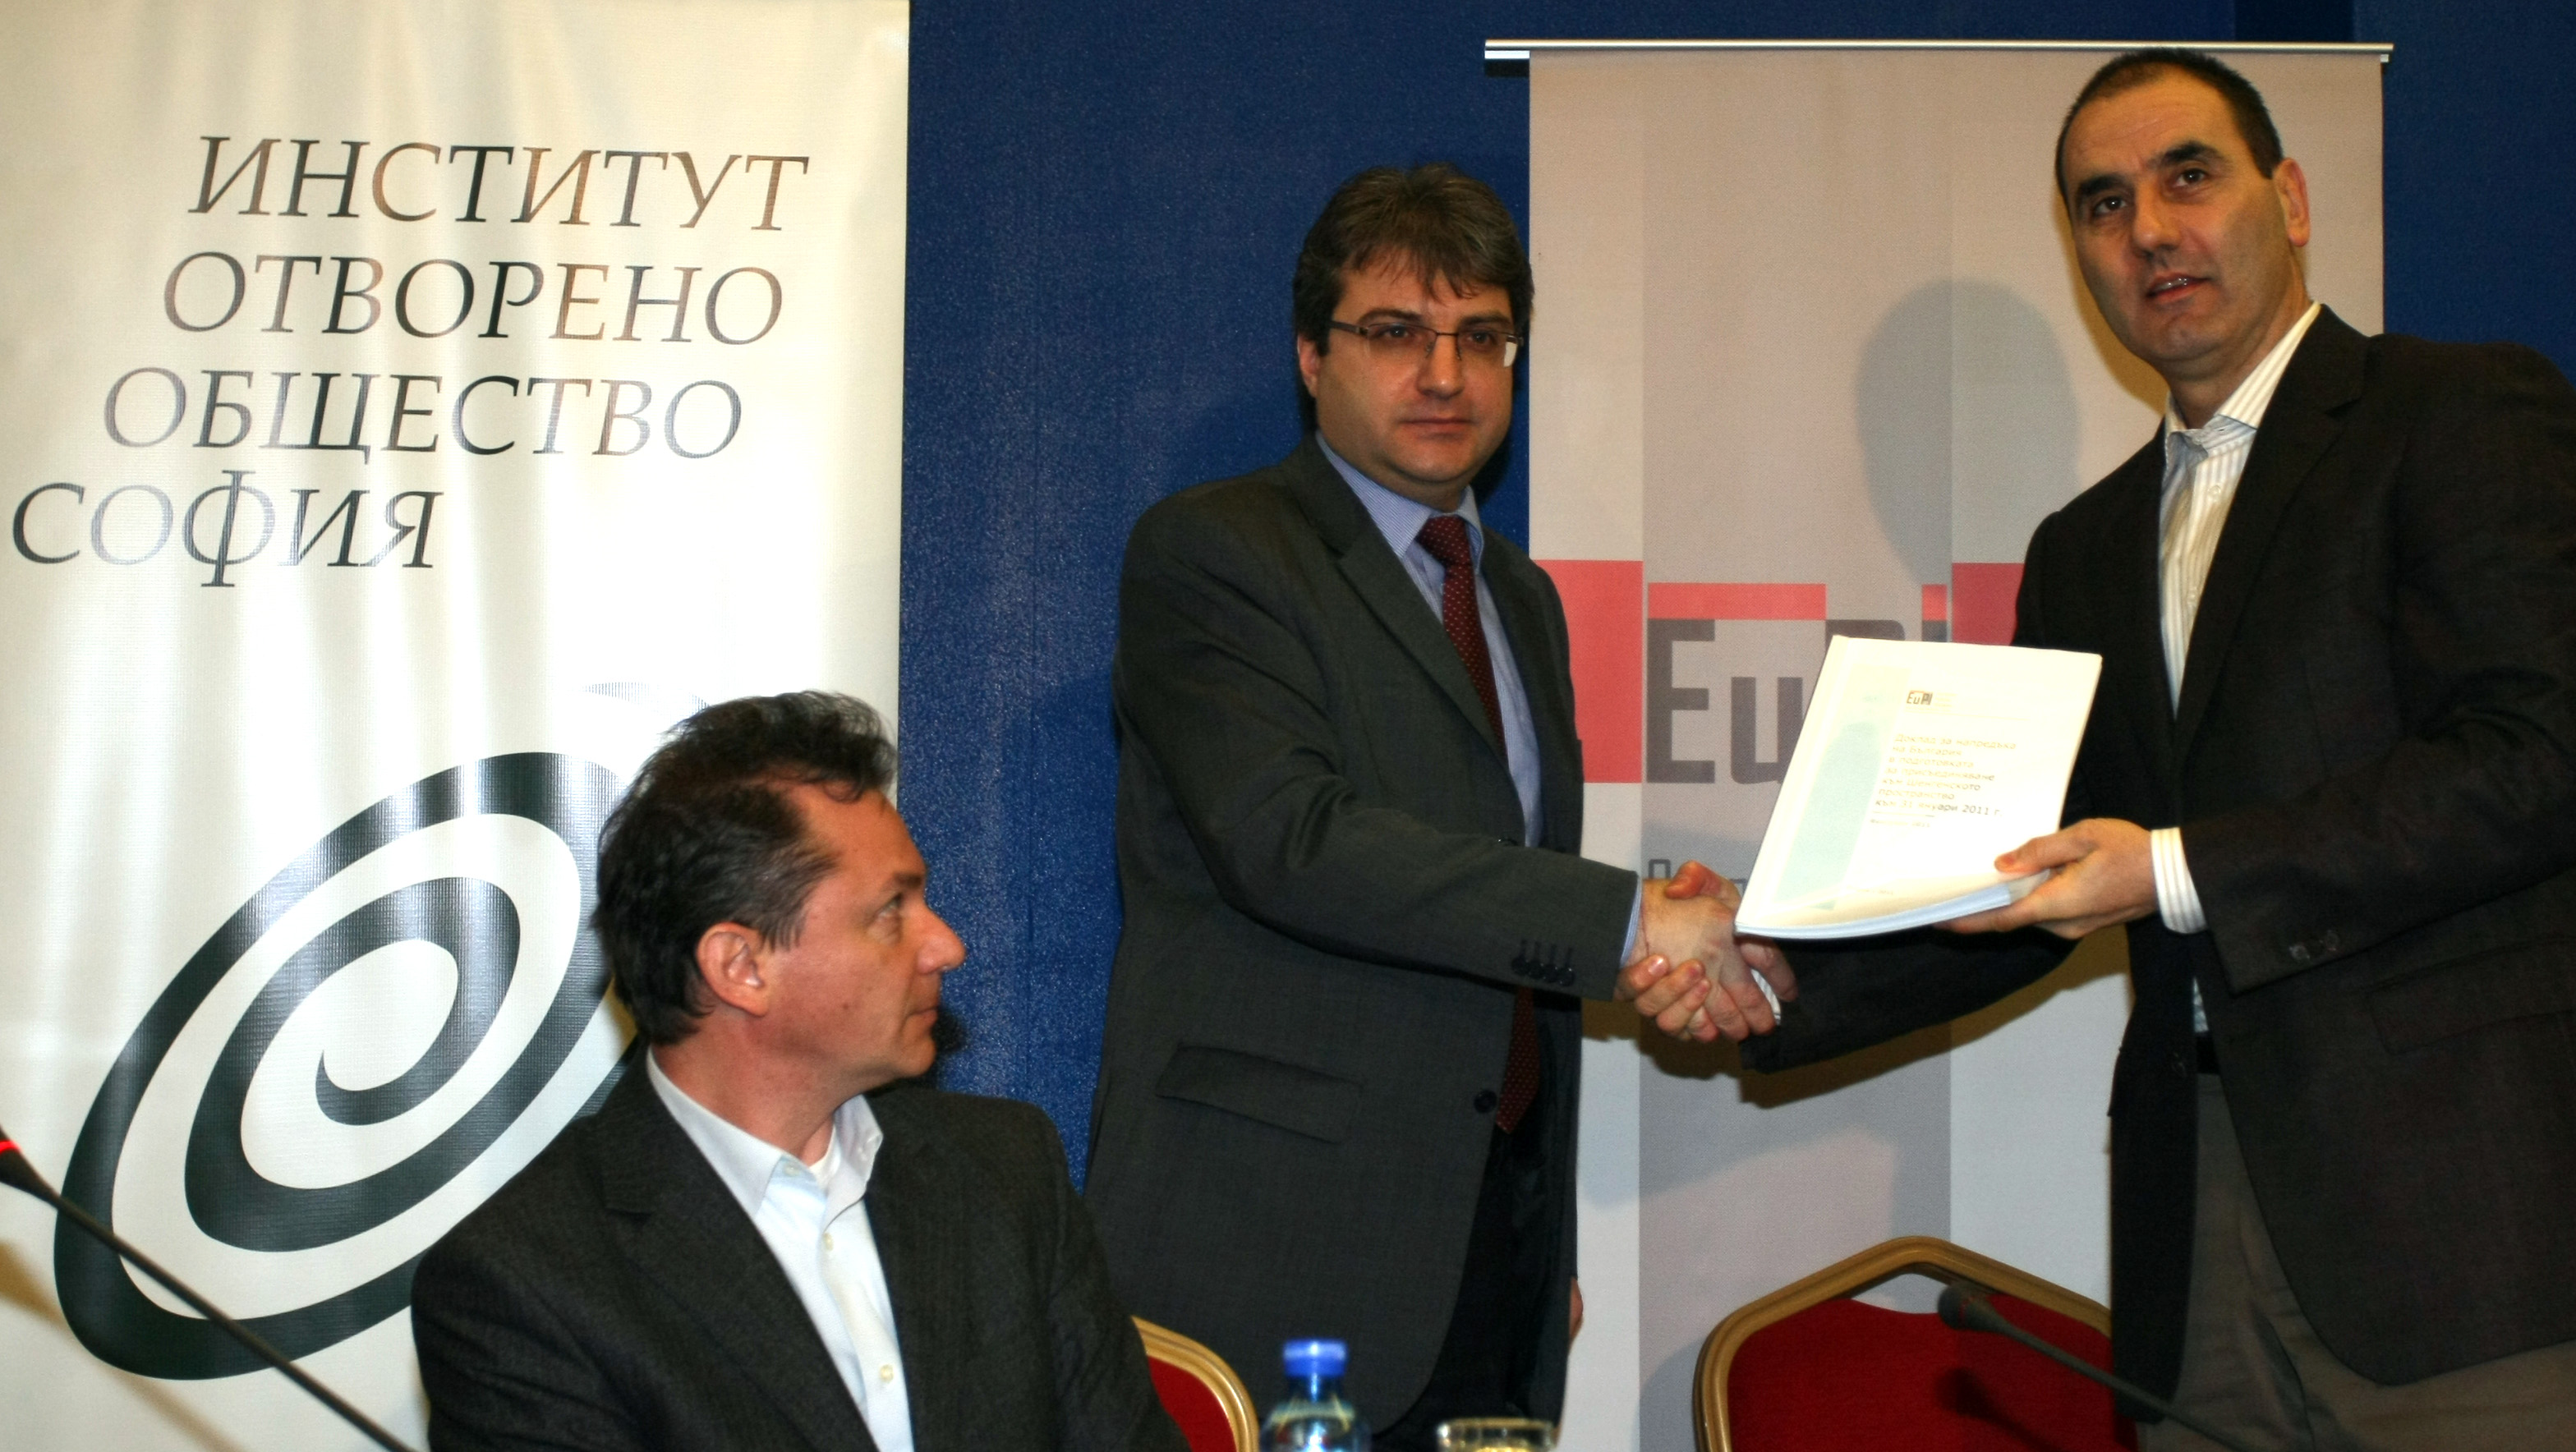 Изпълнителният директор на ”Отворено общество” Георги Стойчев връчва доклада на министър Цветанов